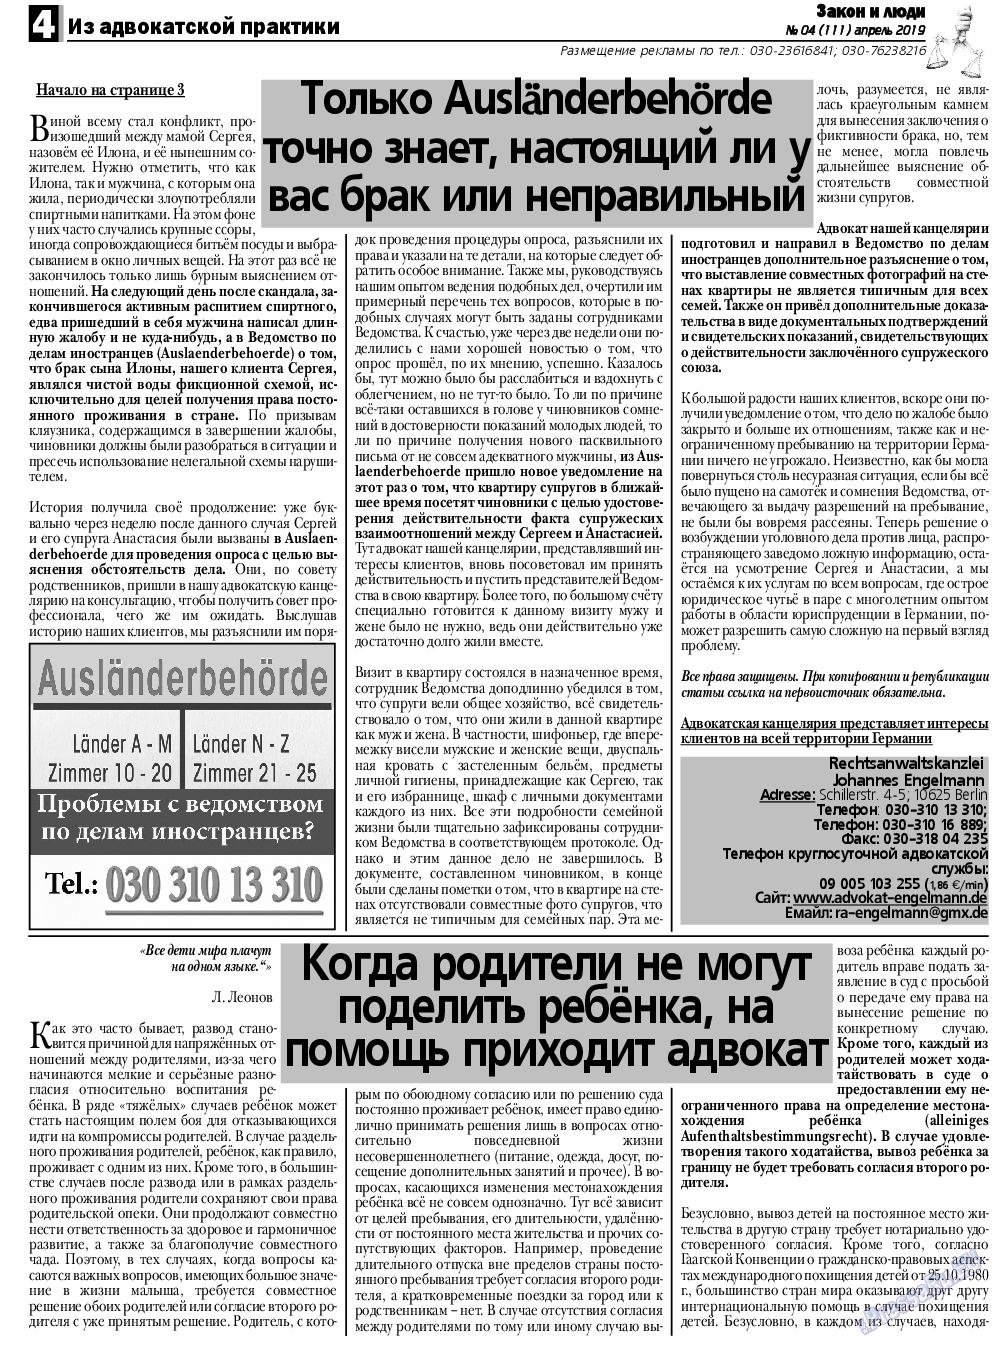 Закон и люди, газета. 2019 №4 стр.4